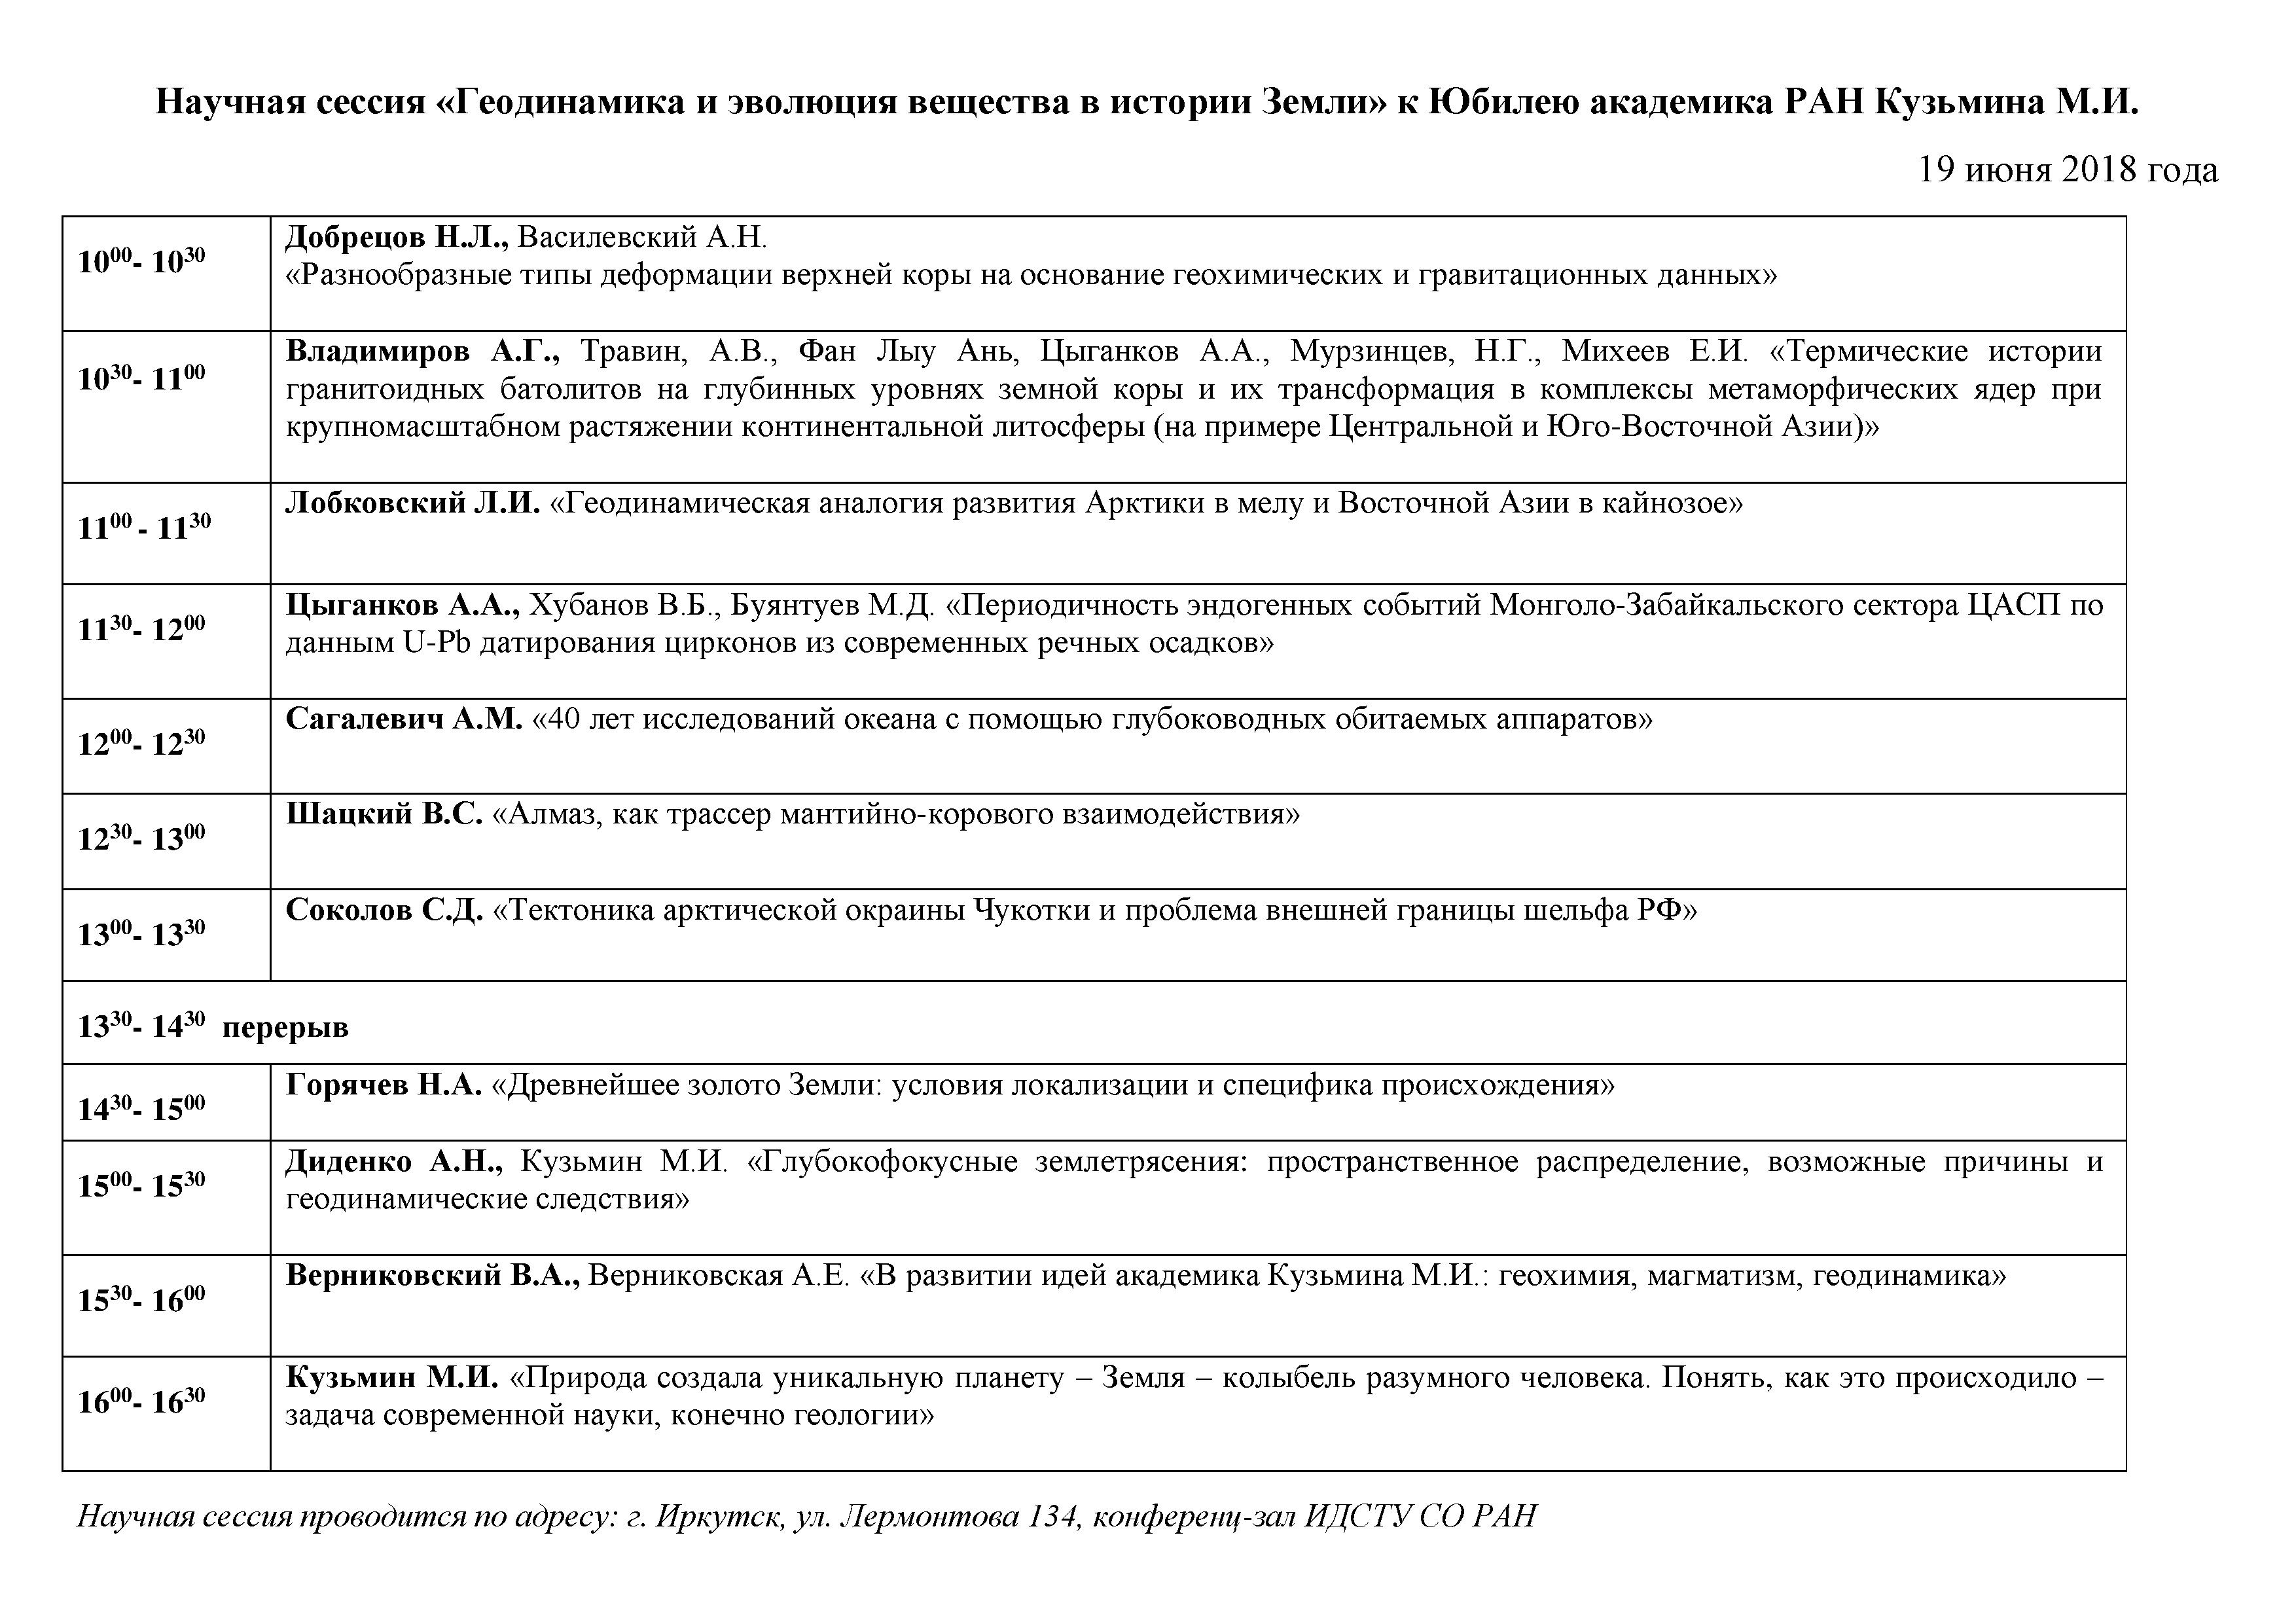 Программа научной сессии к Юбилею М.И. Кузьмина